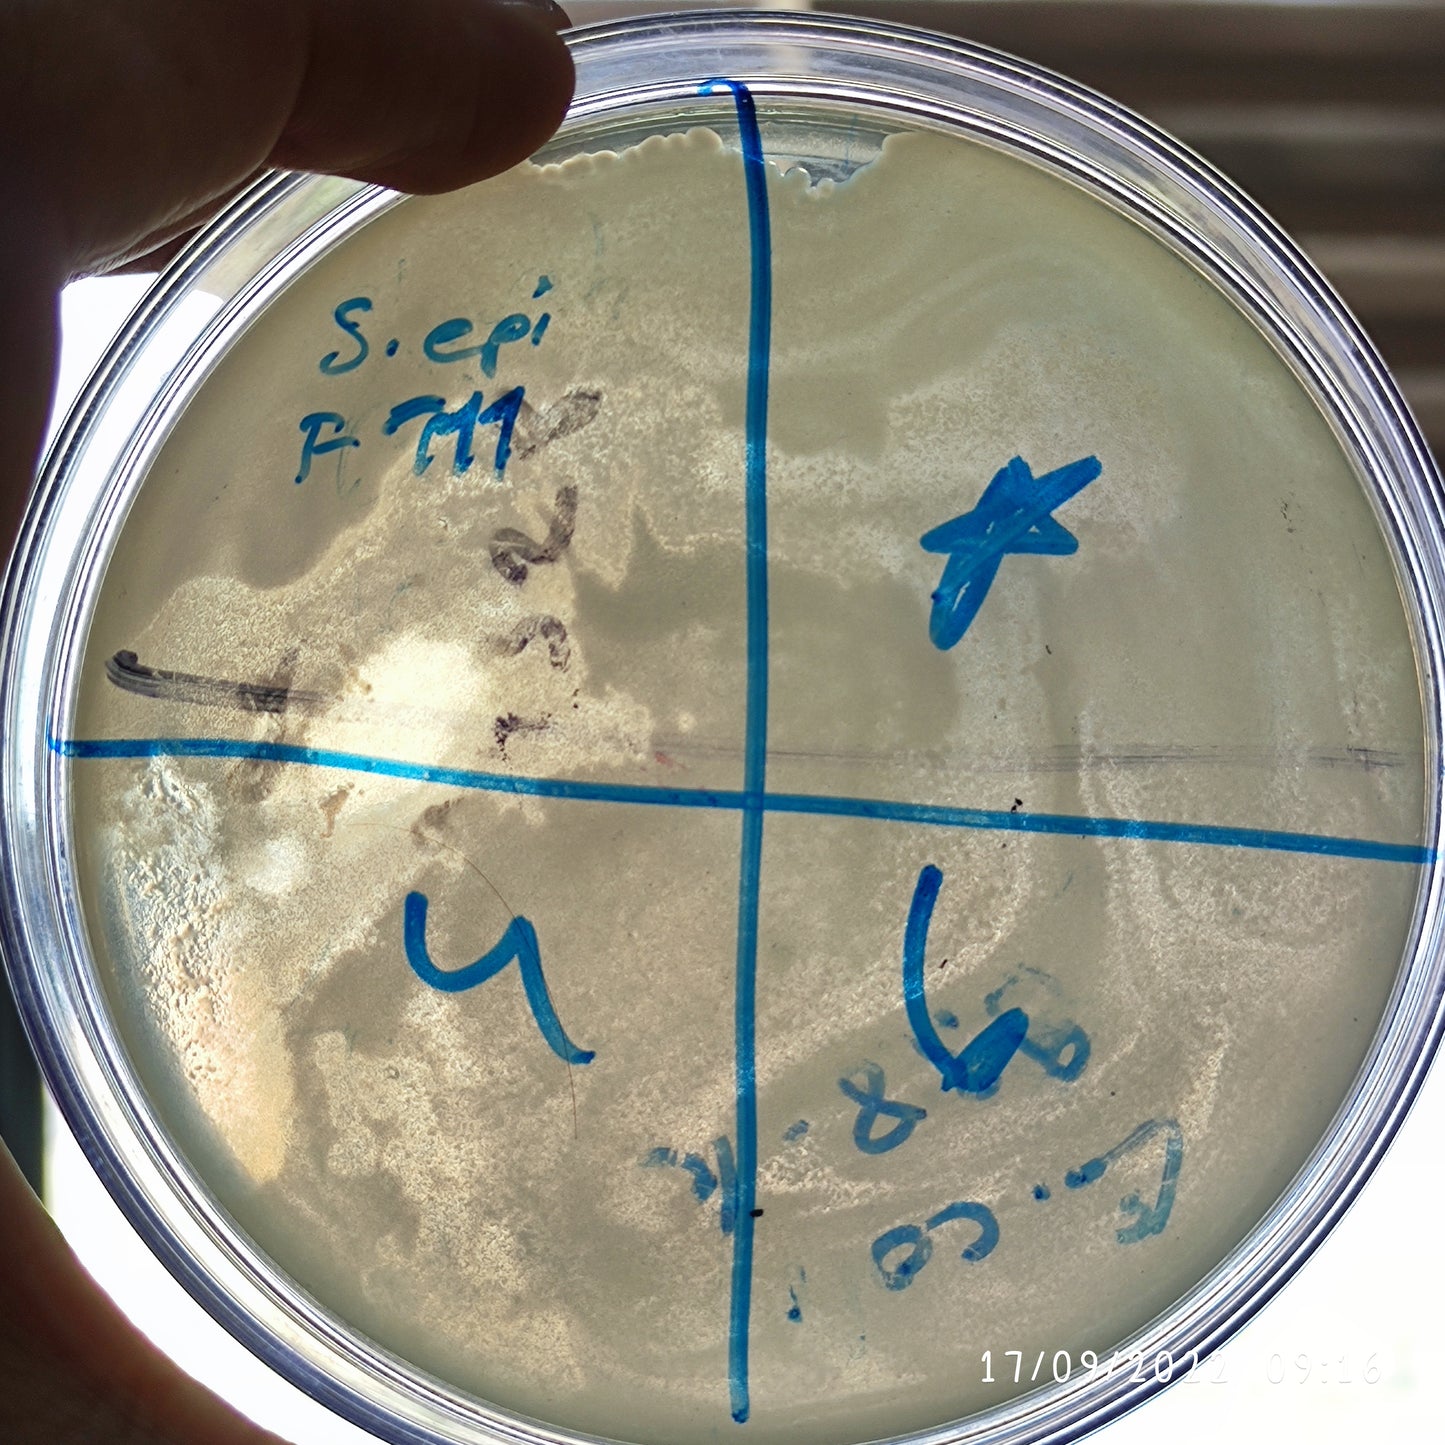 Staphylococcus epidermidis bacteriophage 158111F